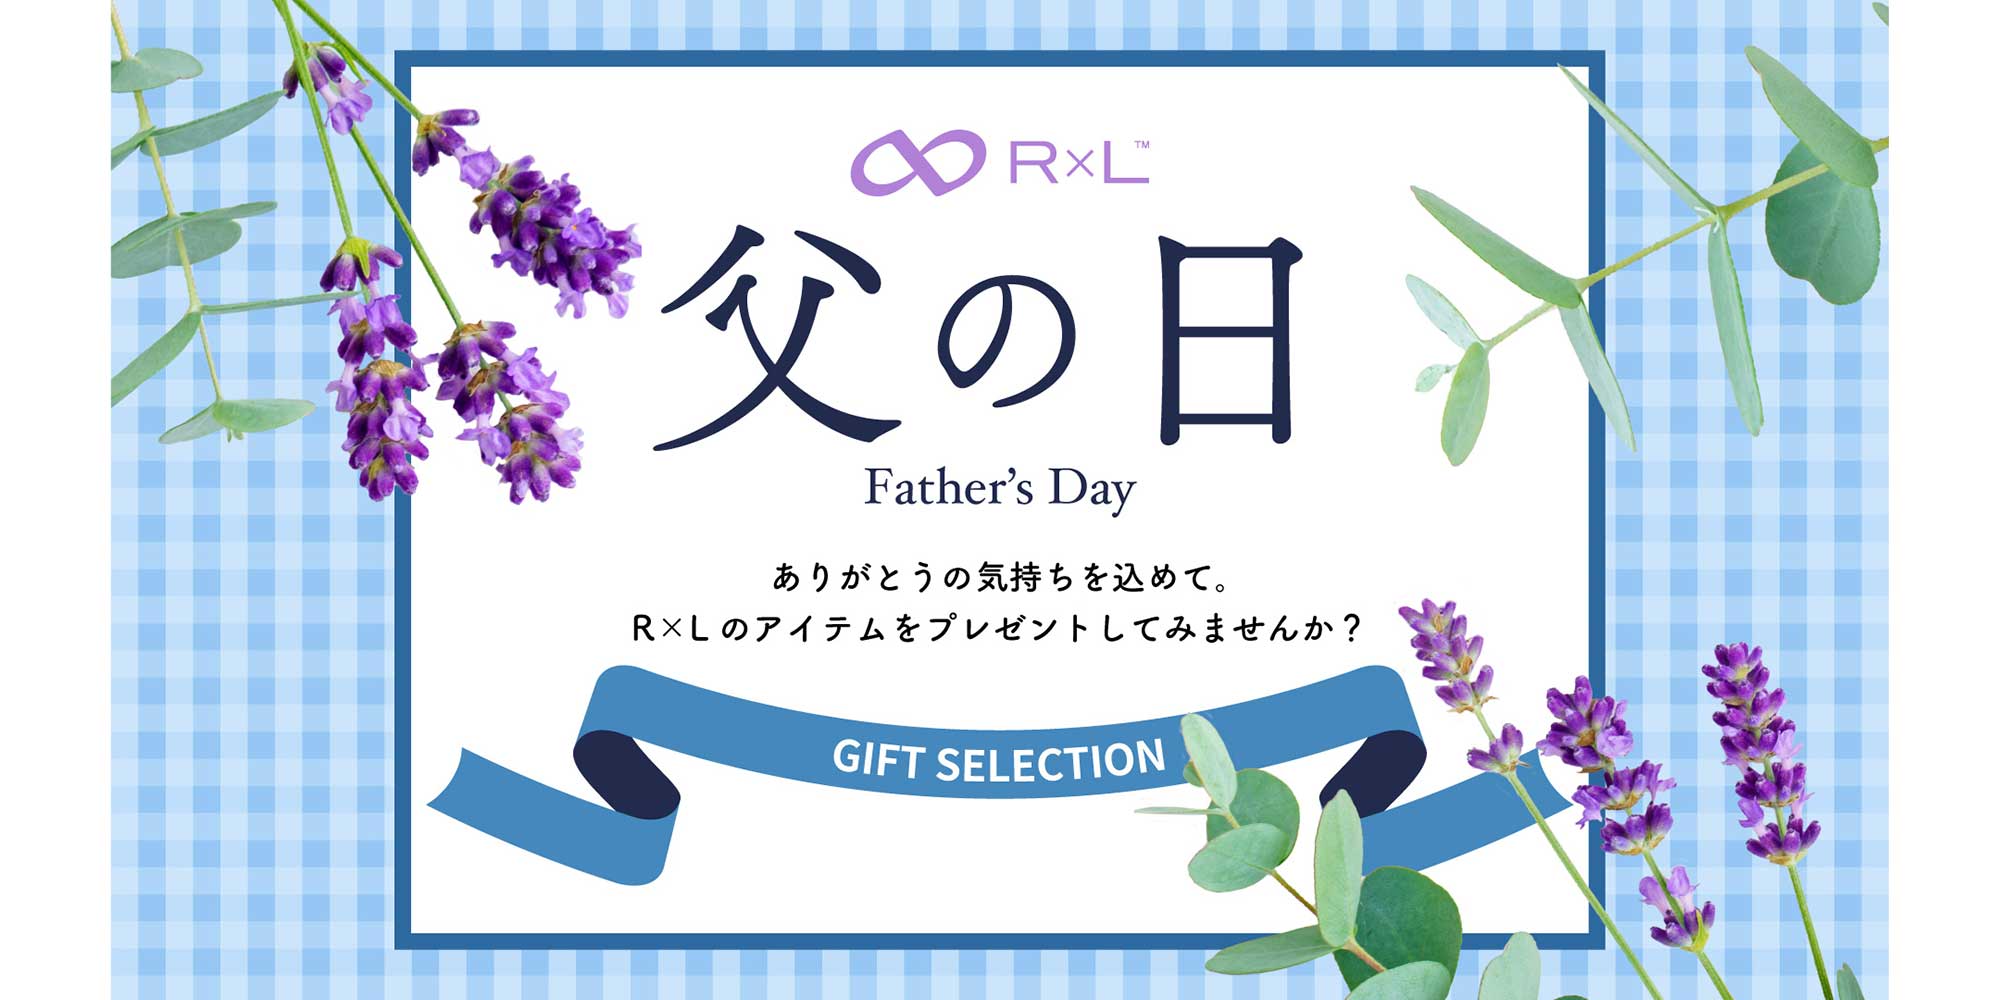 【今年の父の日は6.16】R×L Father's Day ～父の日特集ページ～